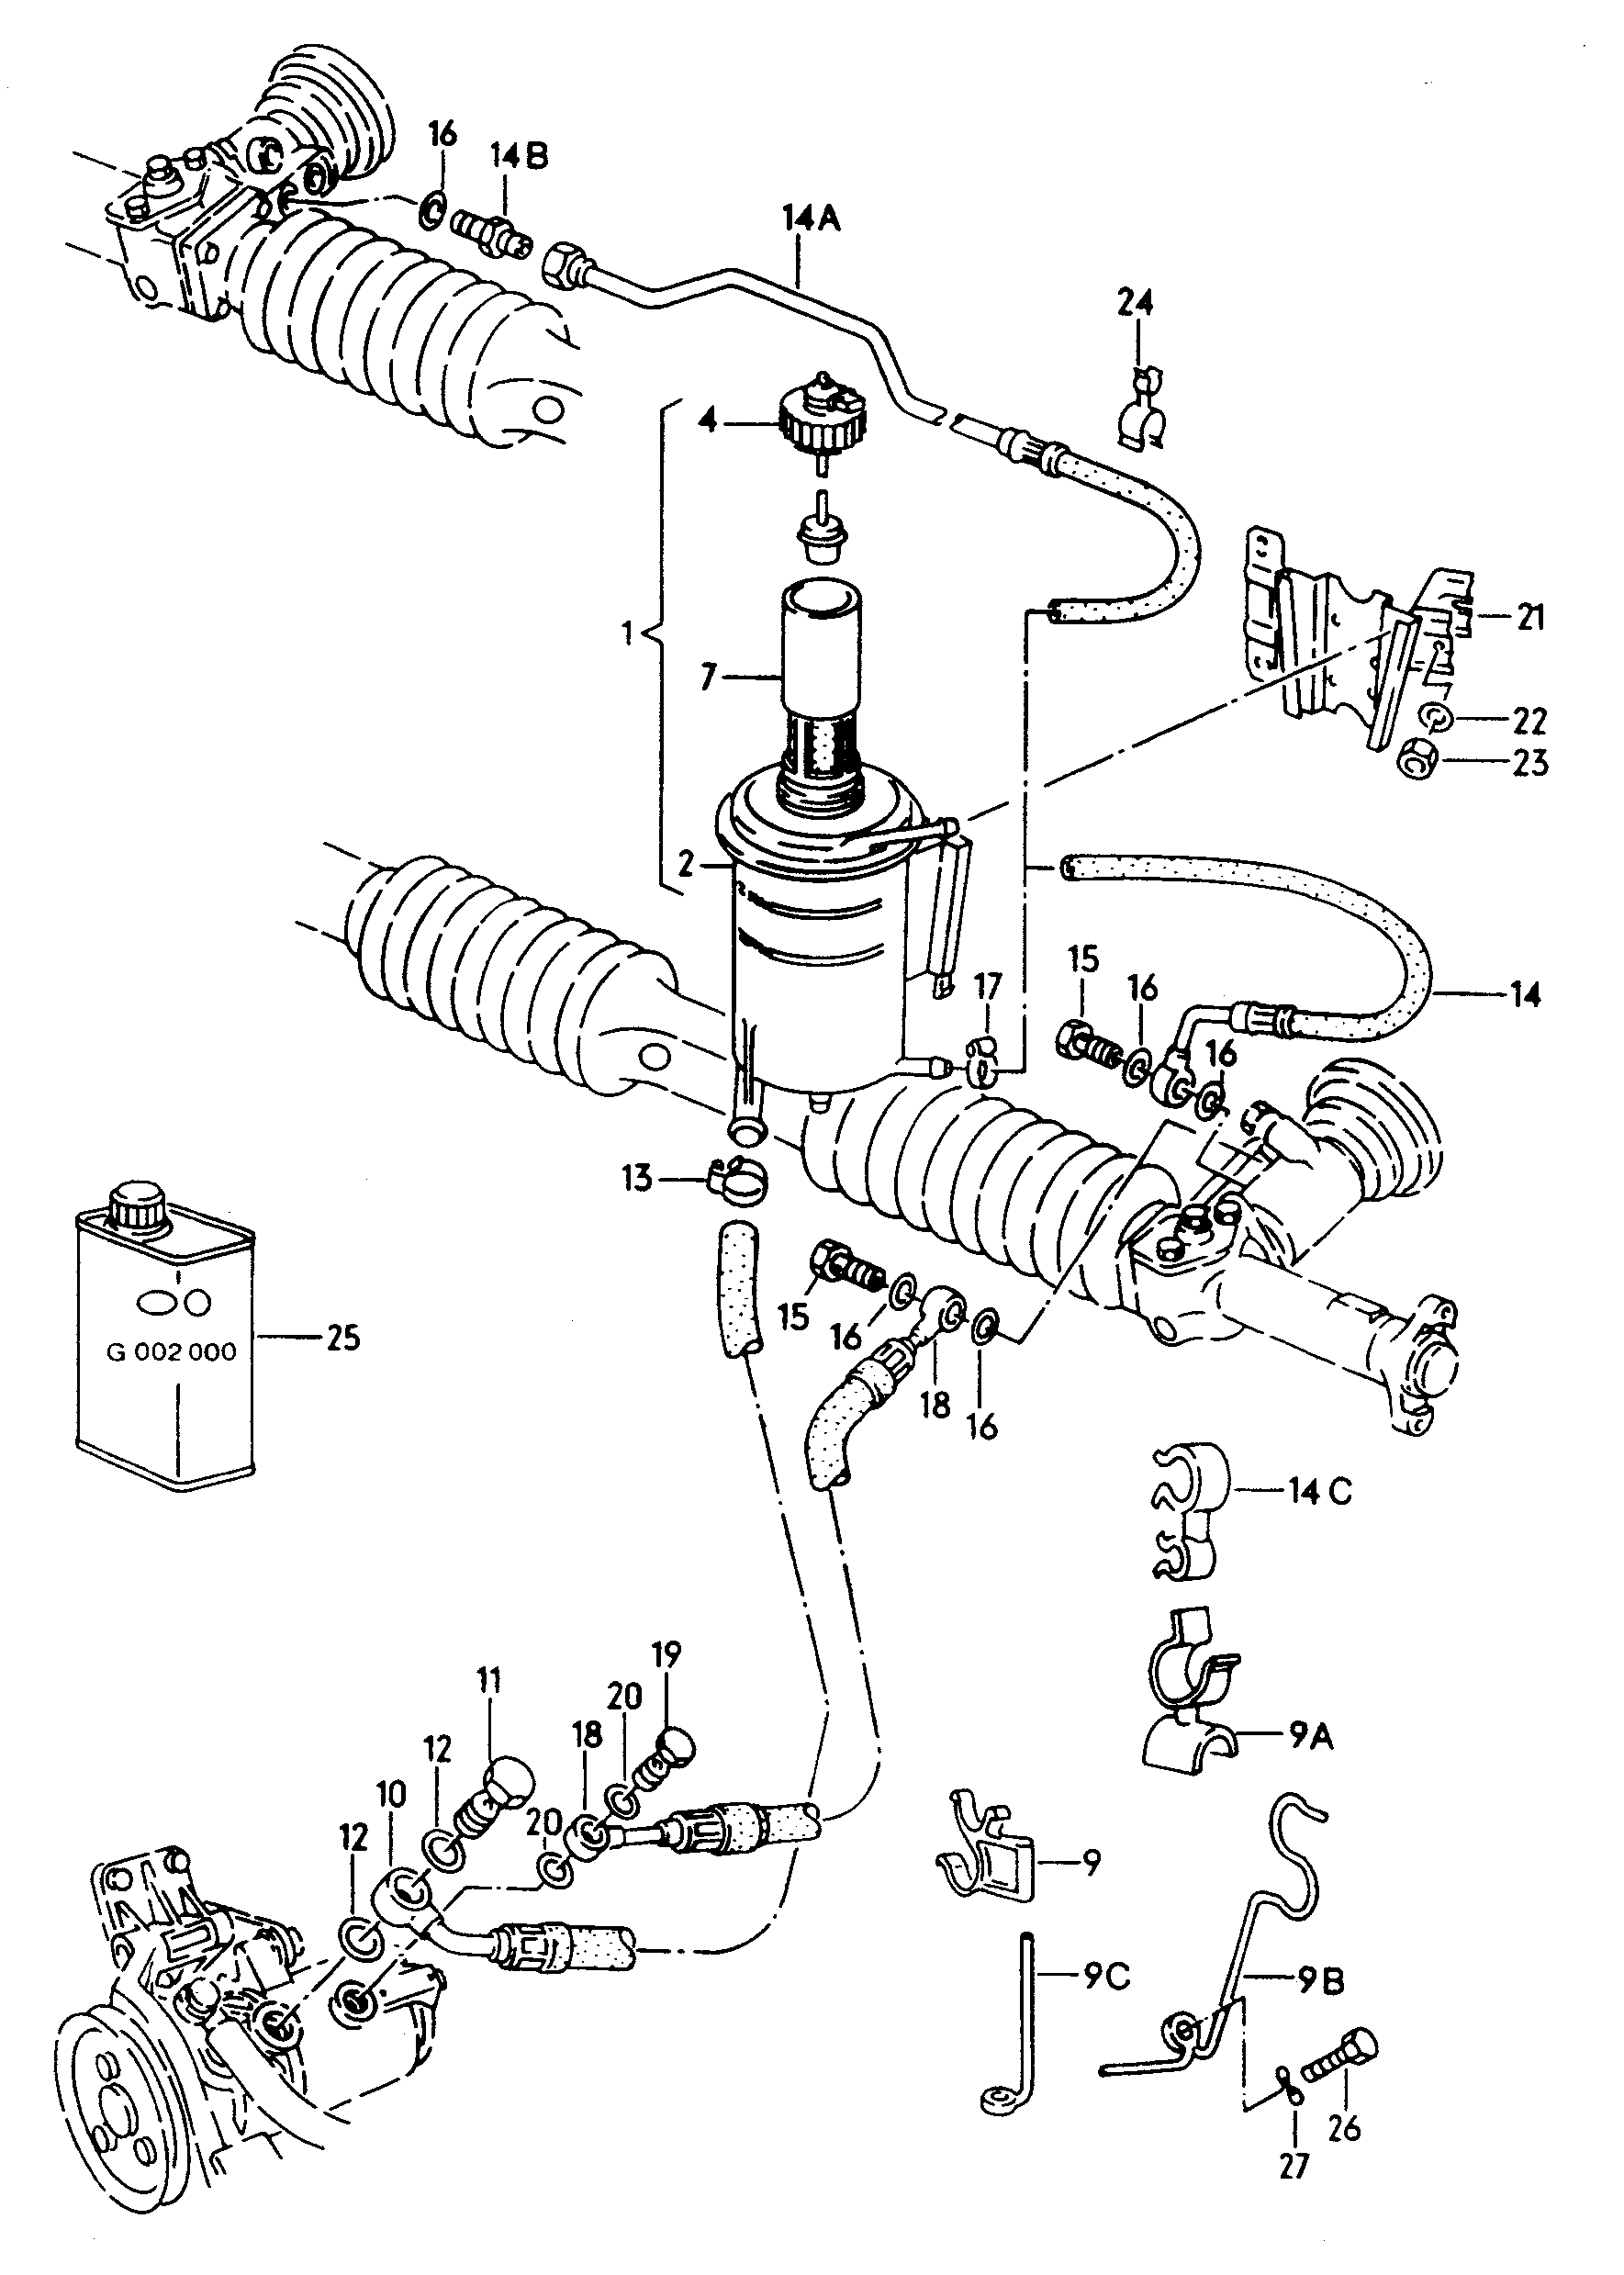 油罐及连接件, 软管
.; 中央液压泵 - Audi 200/Avant quattro(A20Q)  